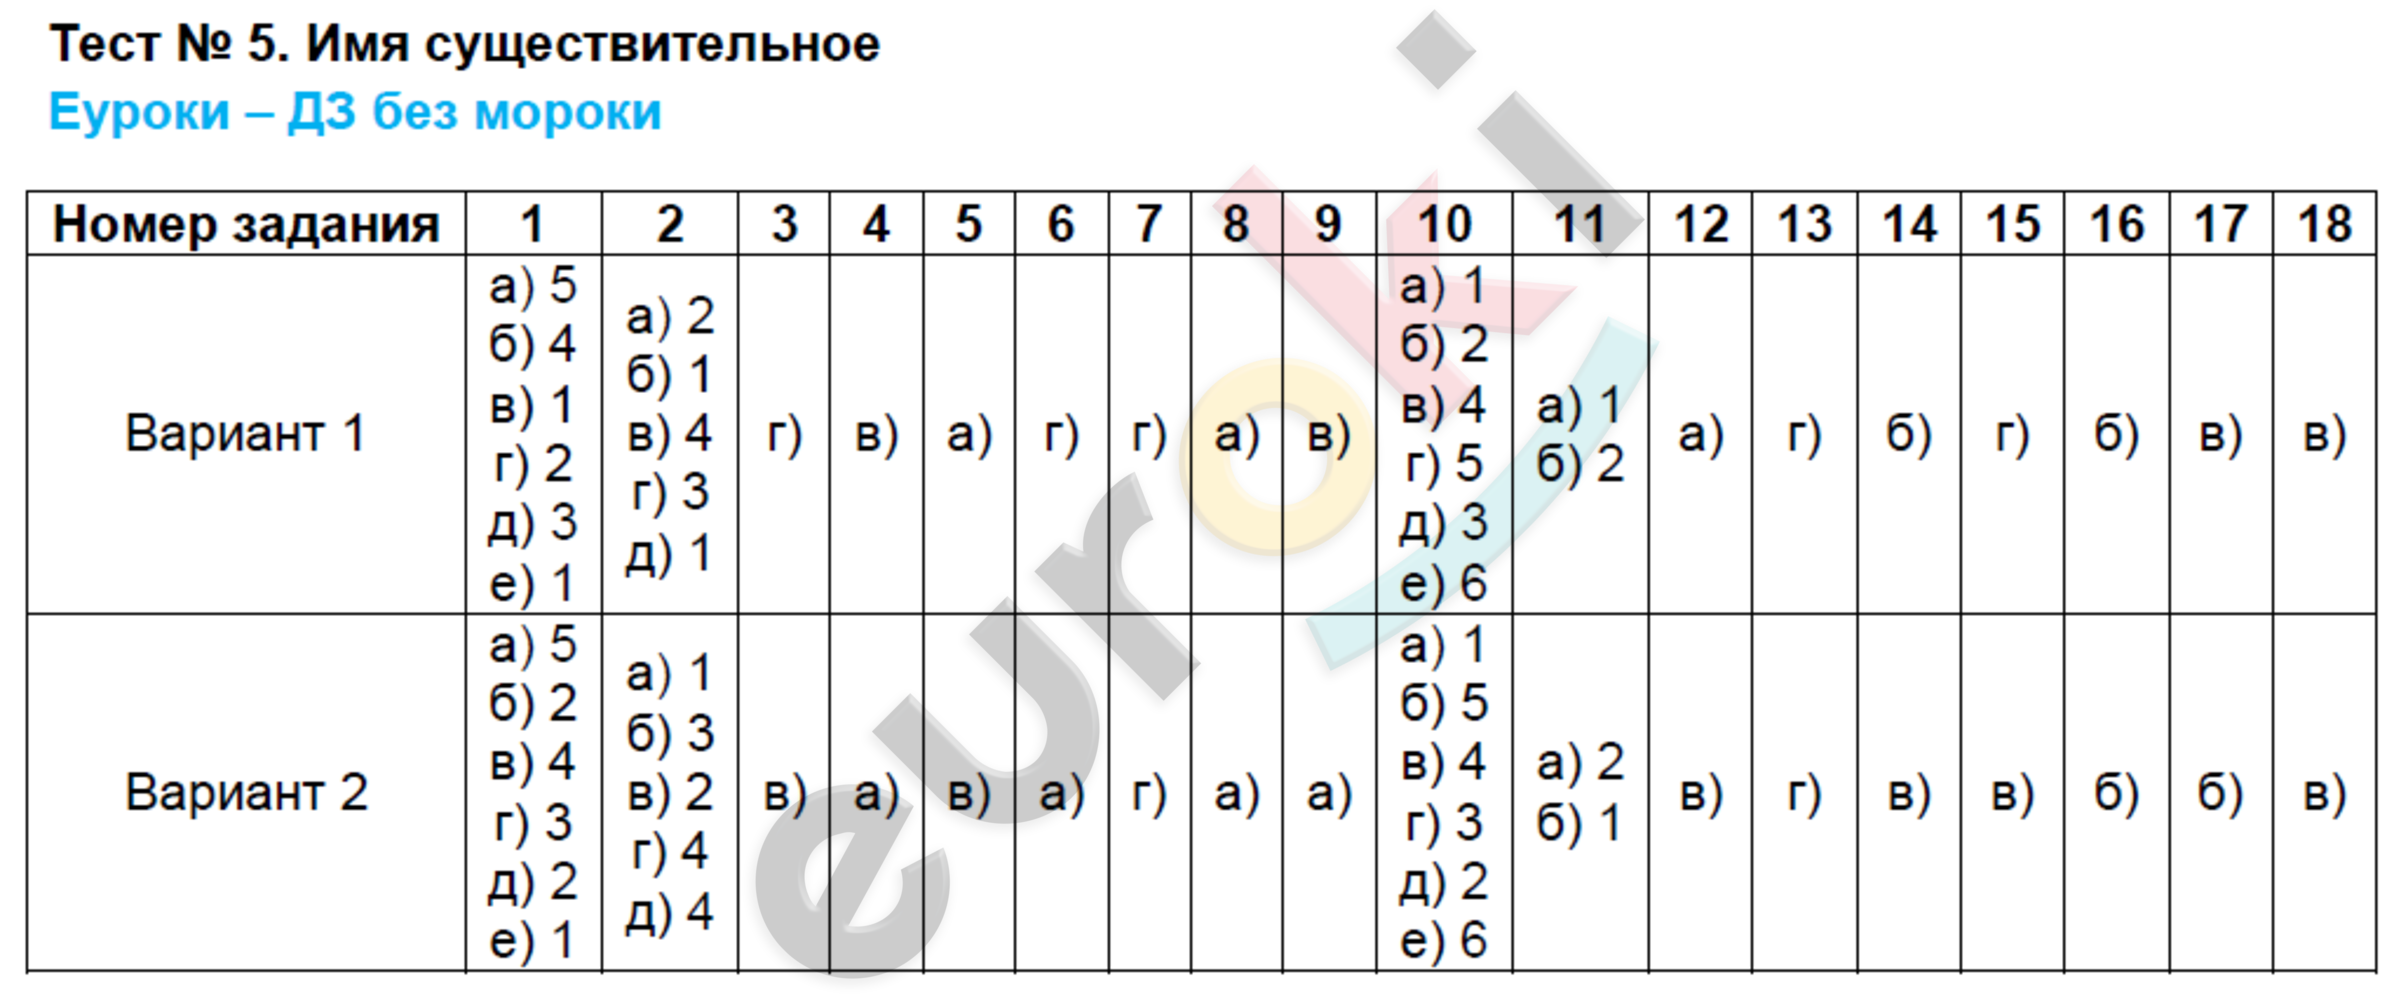 Русский язык 6 класс тематический тесты